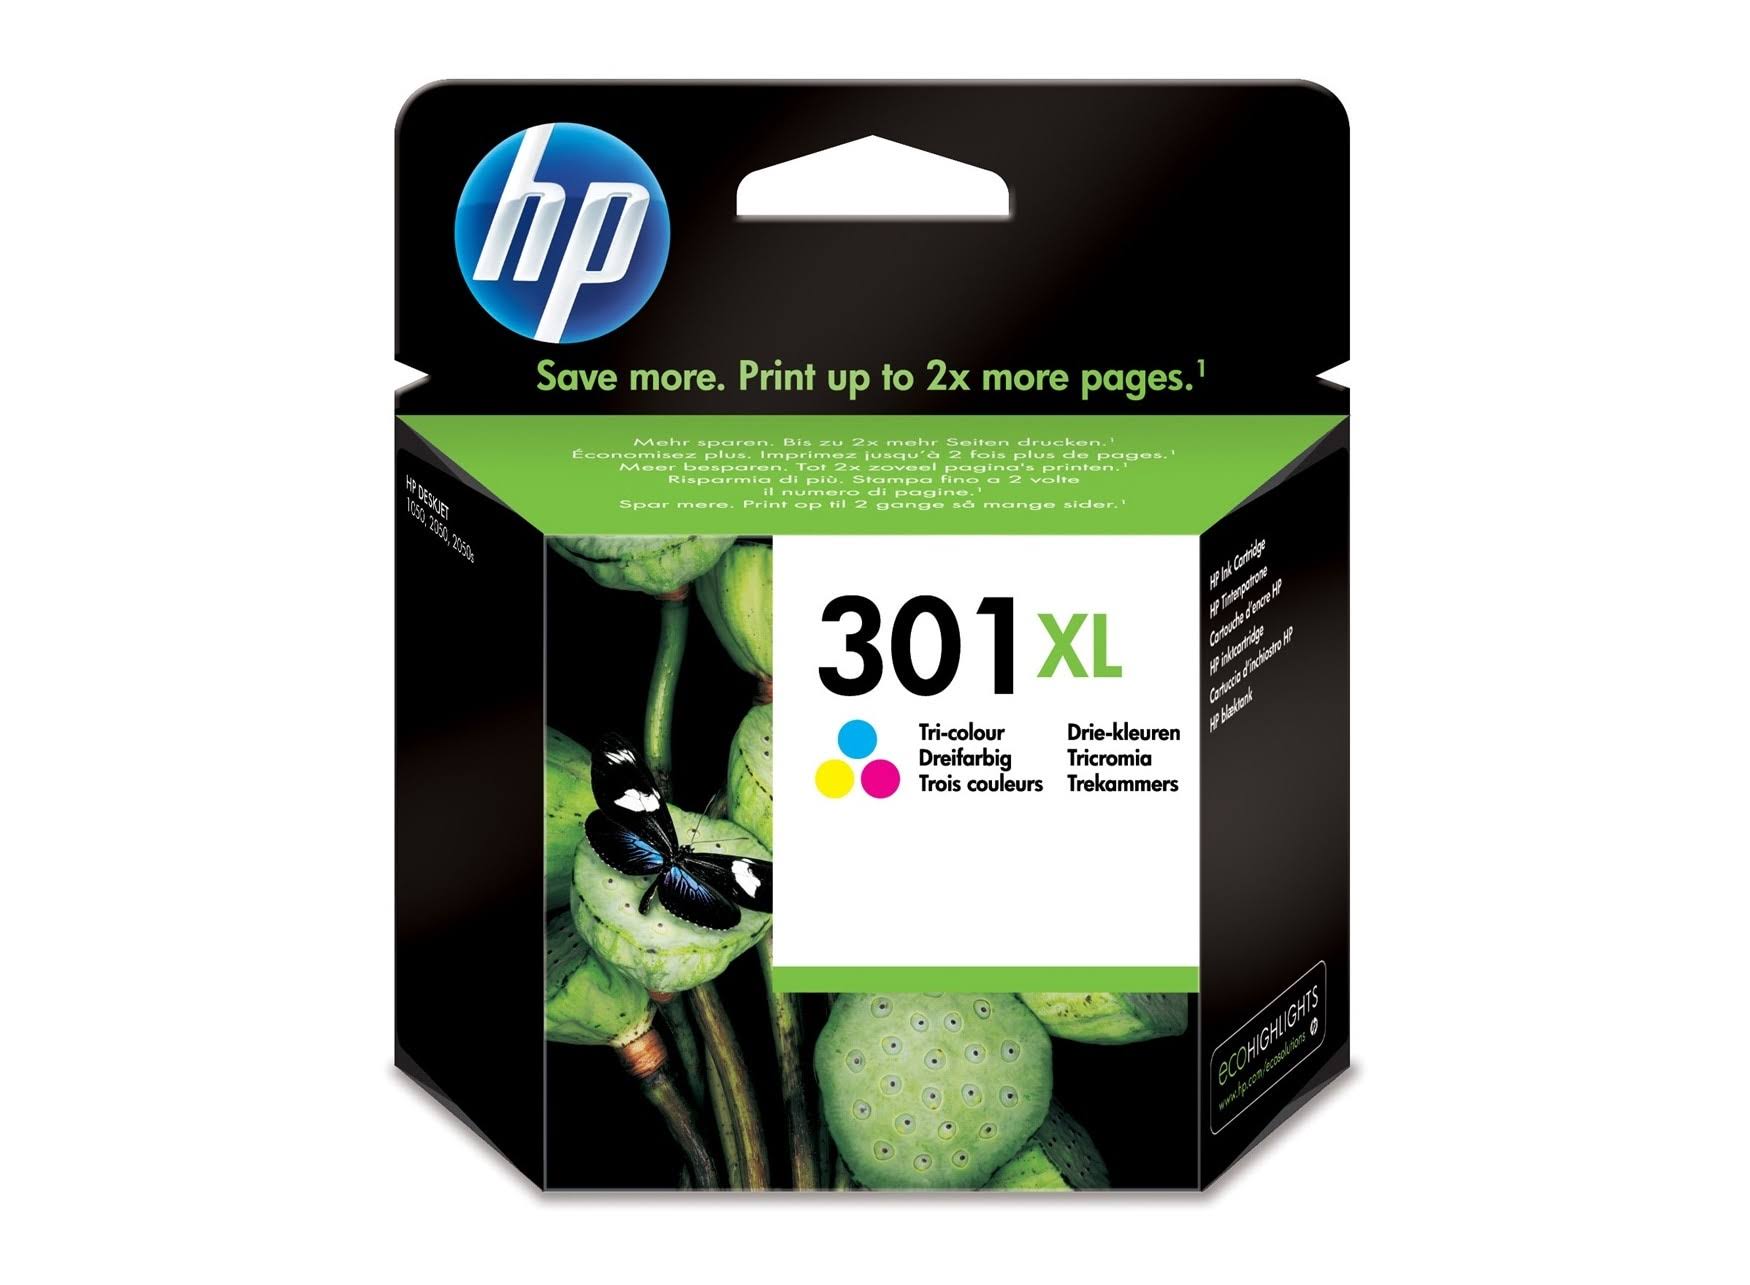 HP 301XL Printer Ink Cartridge - Tricolour